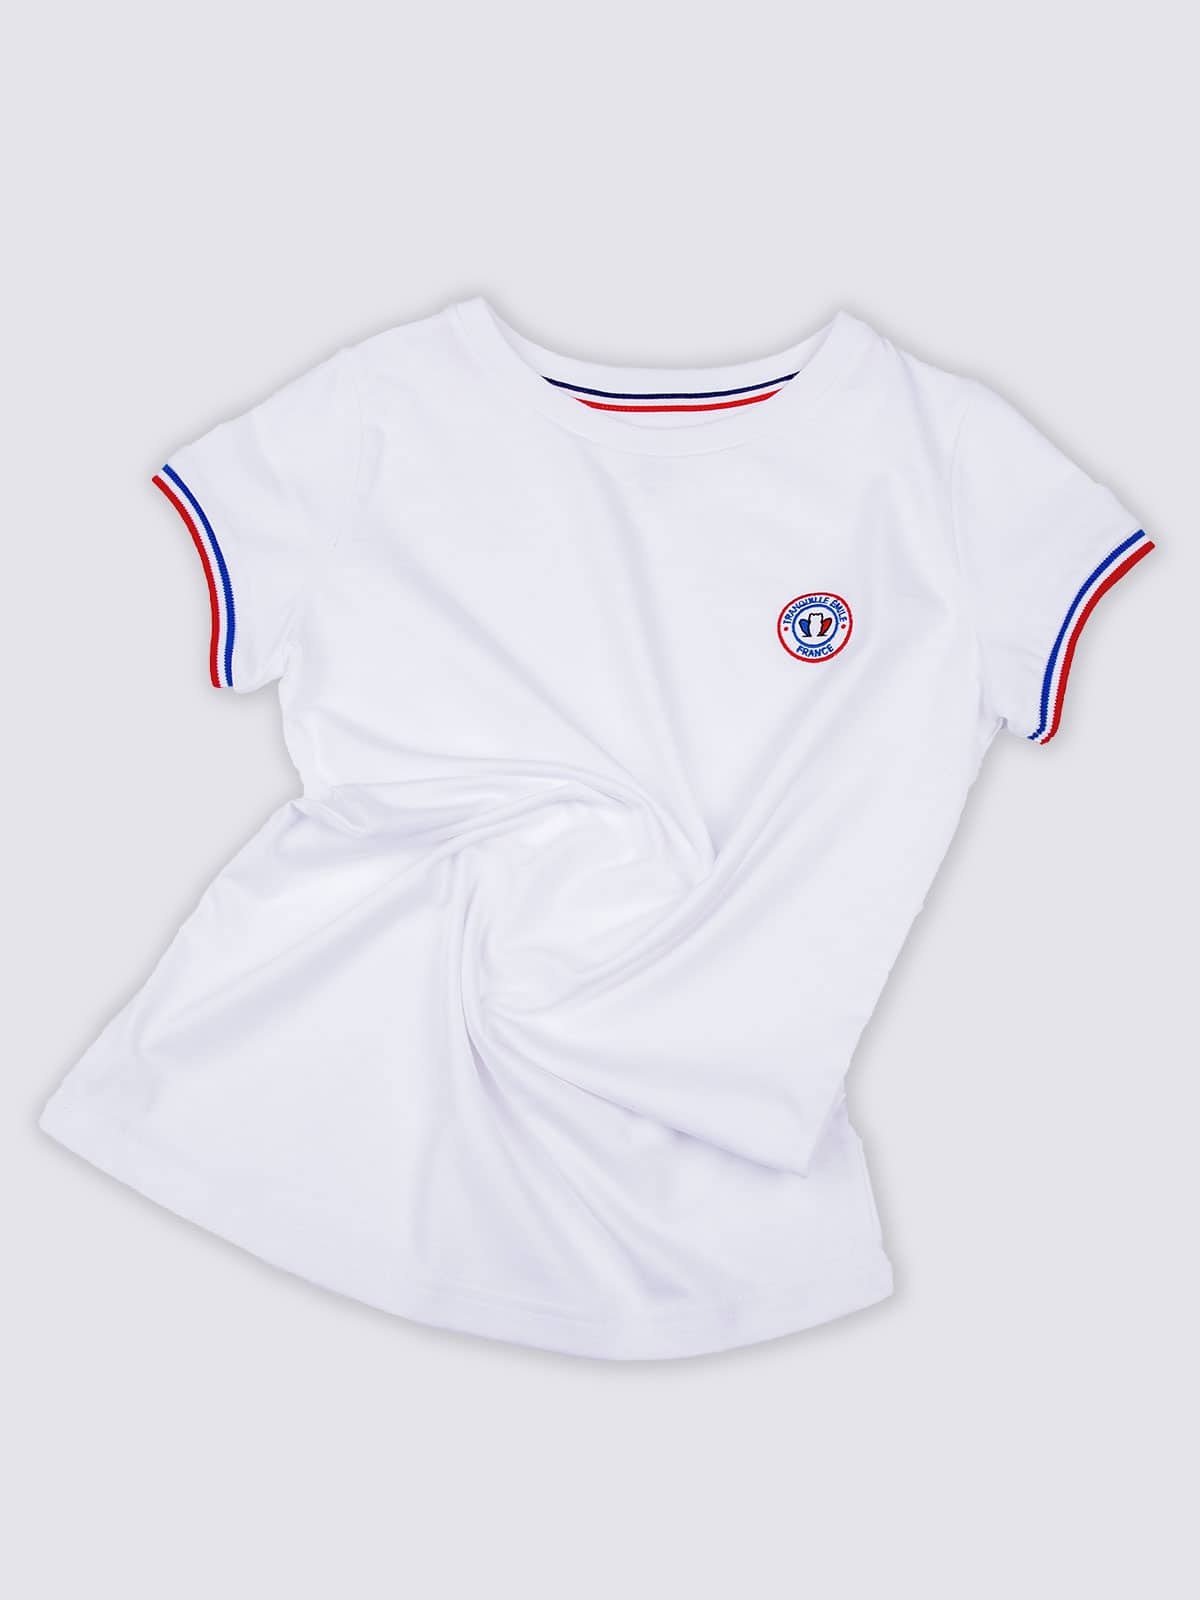 T-shirt Thermique Femme - Blanc - Achel par Lemahieu - Marques de